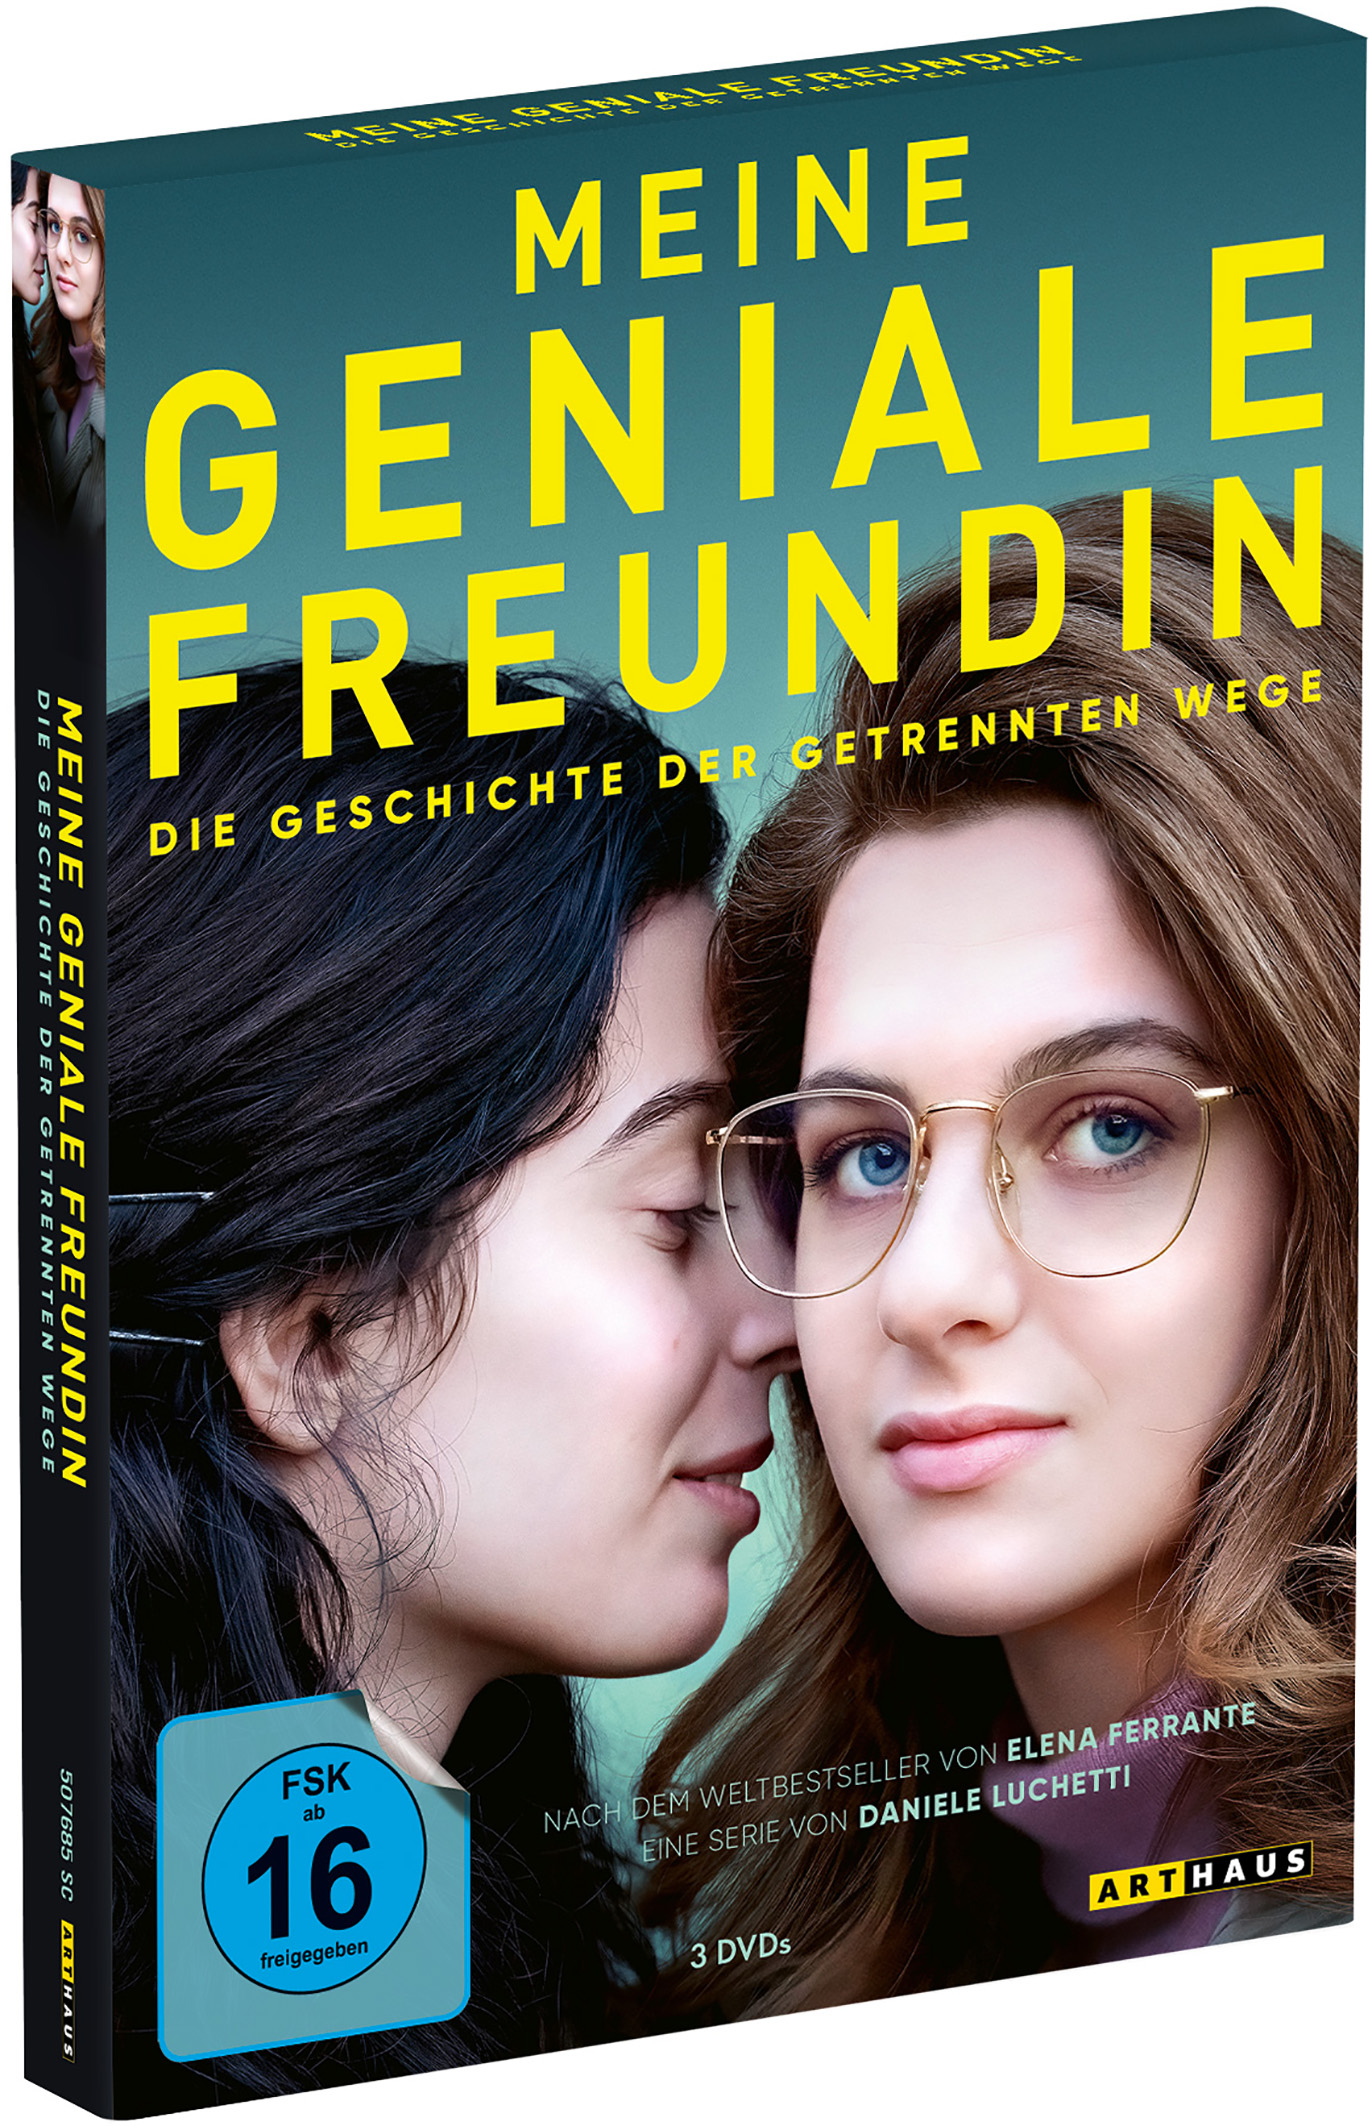 Meine geniale Freundin - Wege Geschichte DVD Staffel getrennten Die der 3 